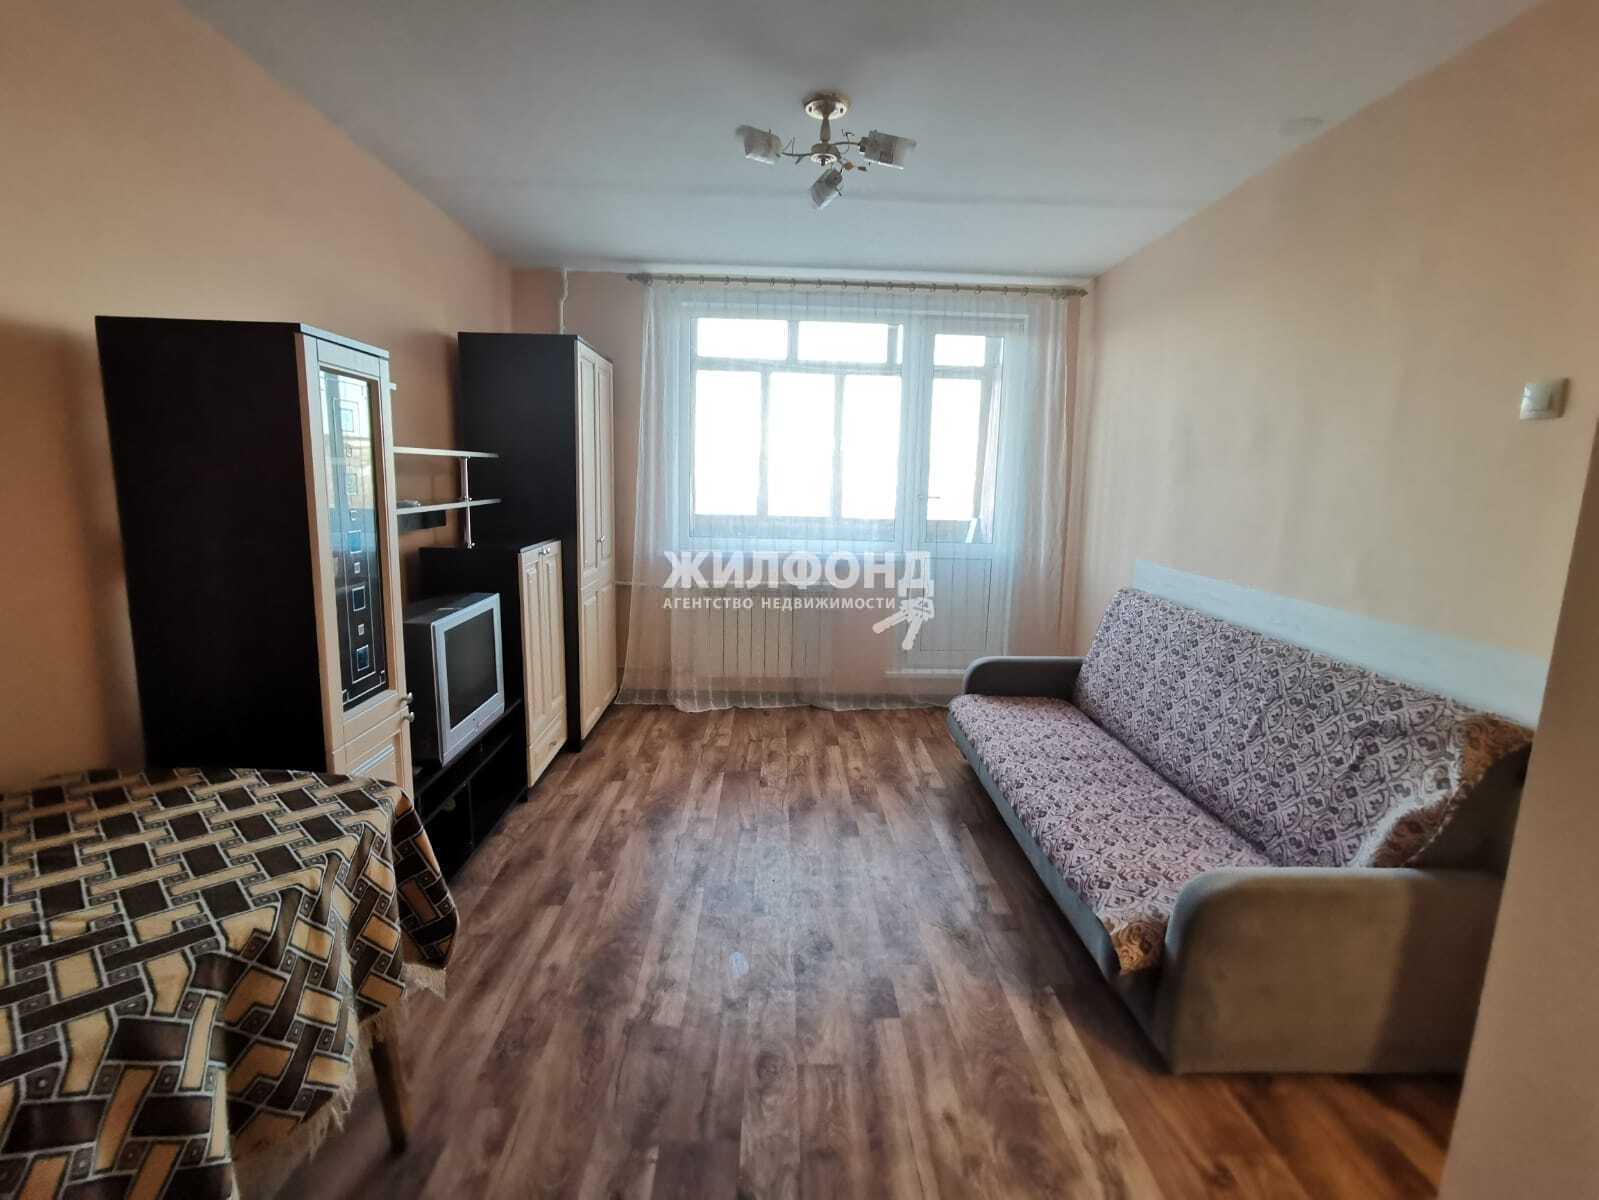 Квартира на ночь в новосибирске недорого с фото